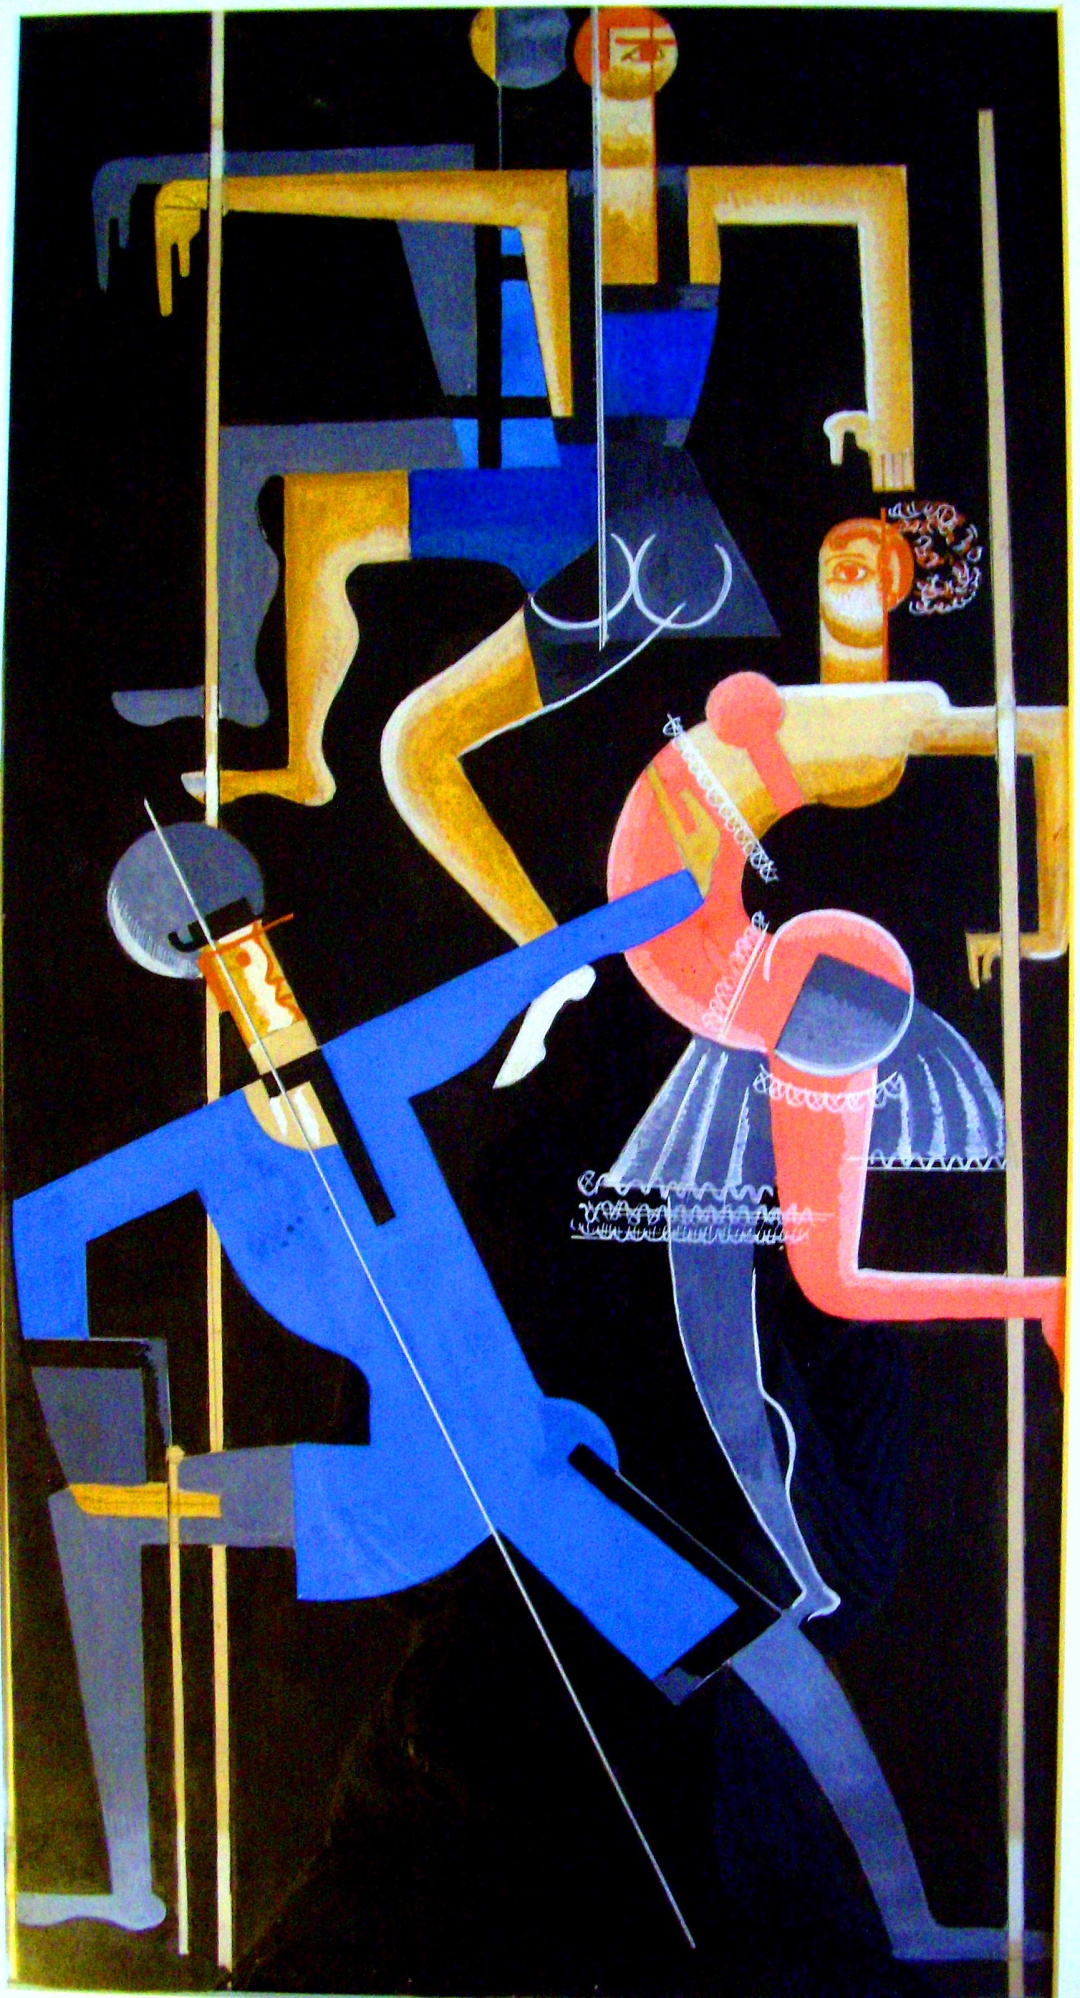 15-ескізи костюмів до хореографічної мініатюри Синя танцівщиця, хореограф -Броніслава Ніжинська, Київ, 1920 р.